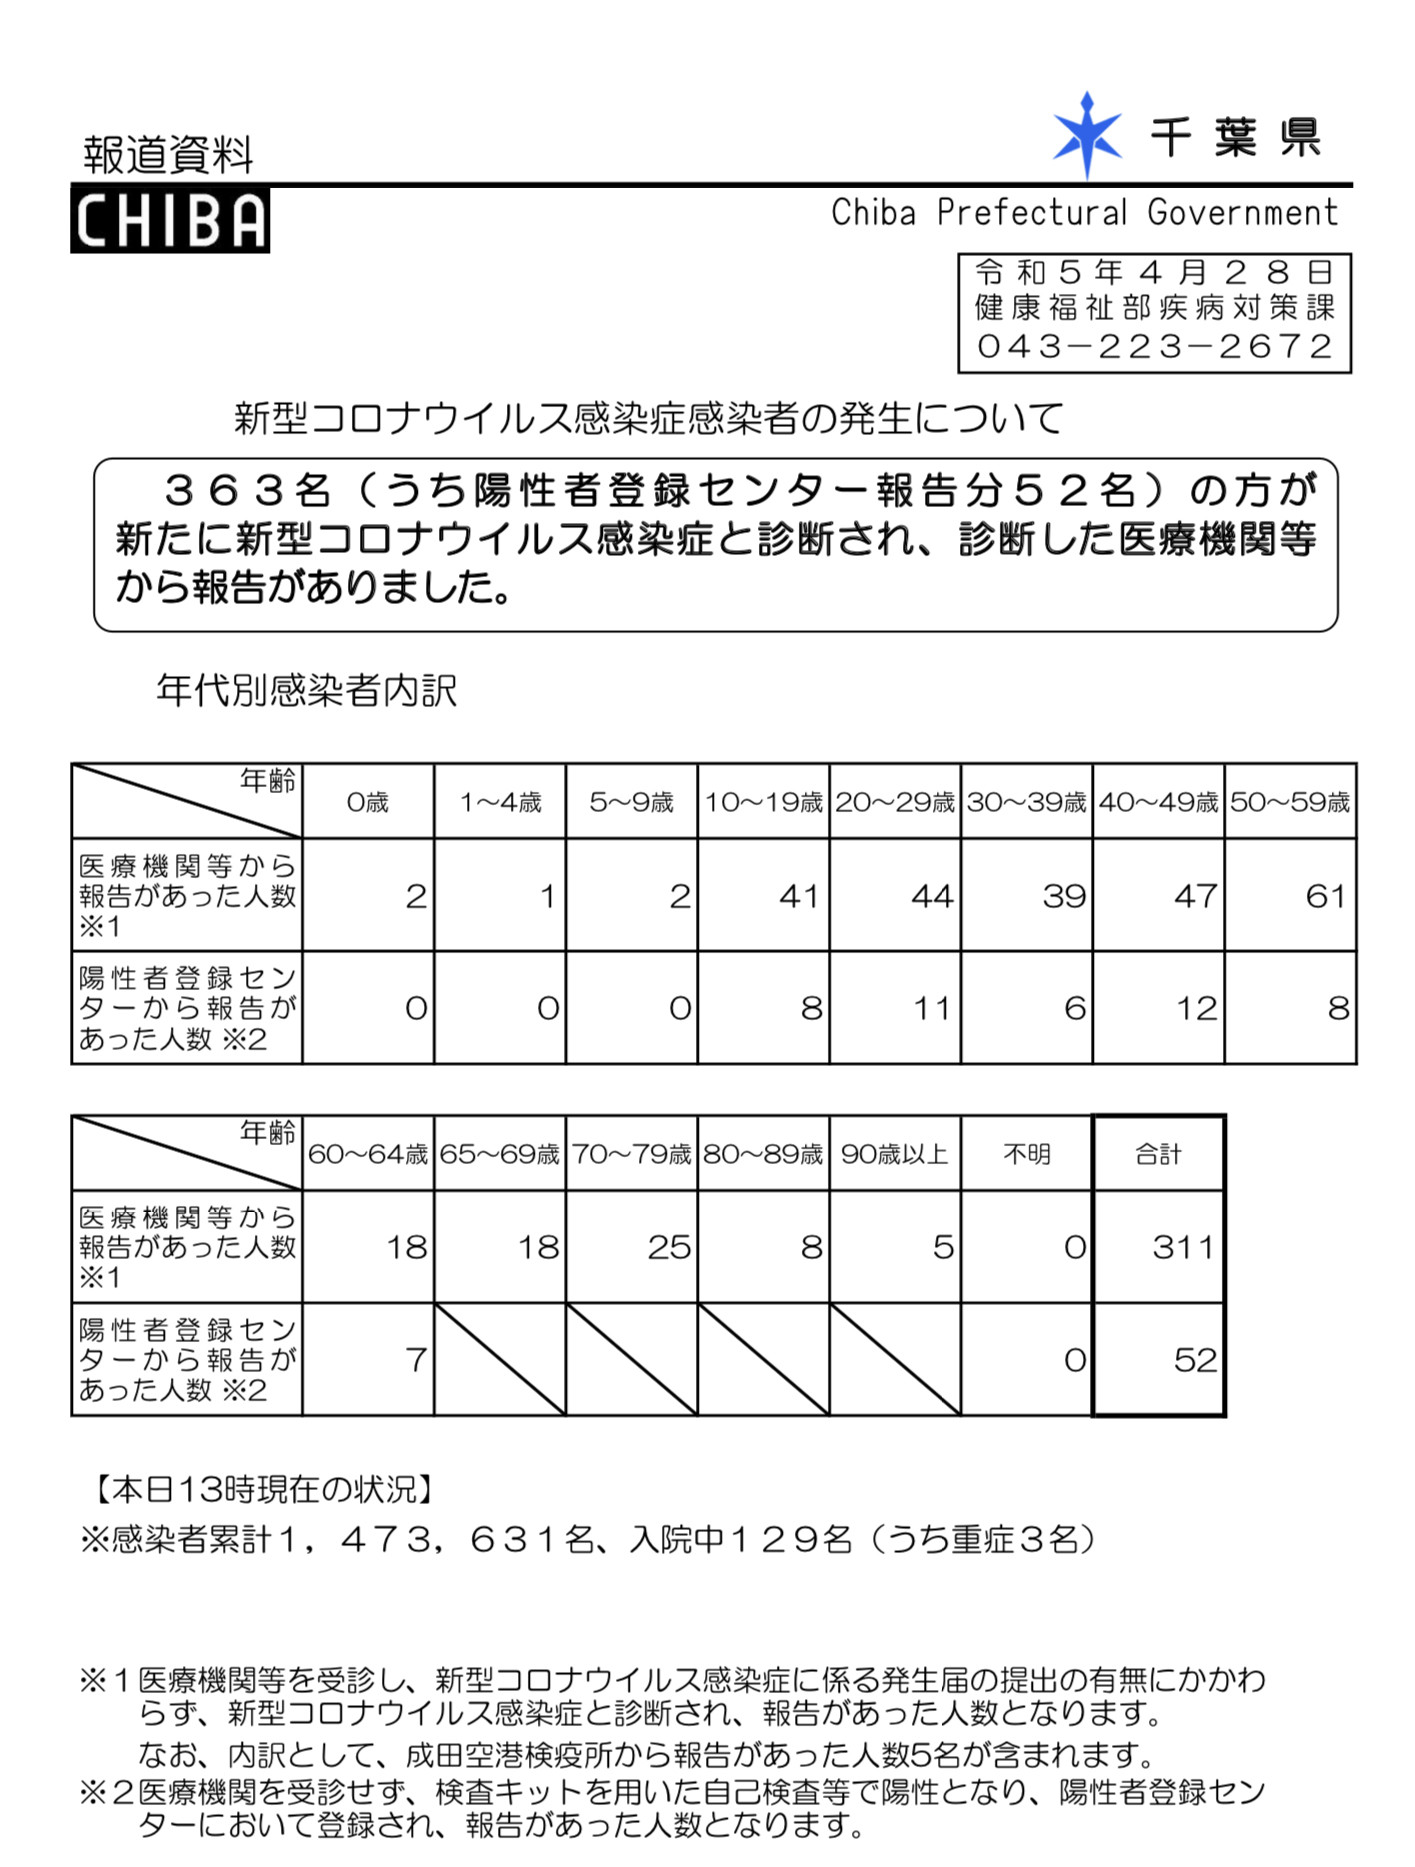 2023年4月28日千葉県新型コロナウイルス感染症情報